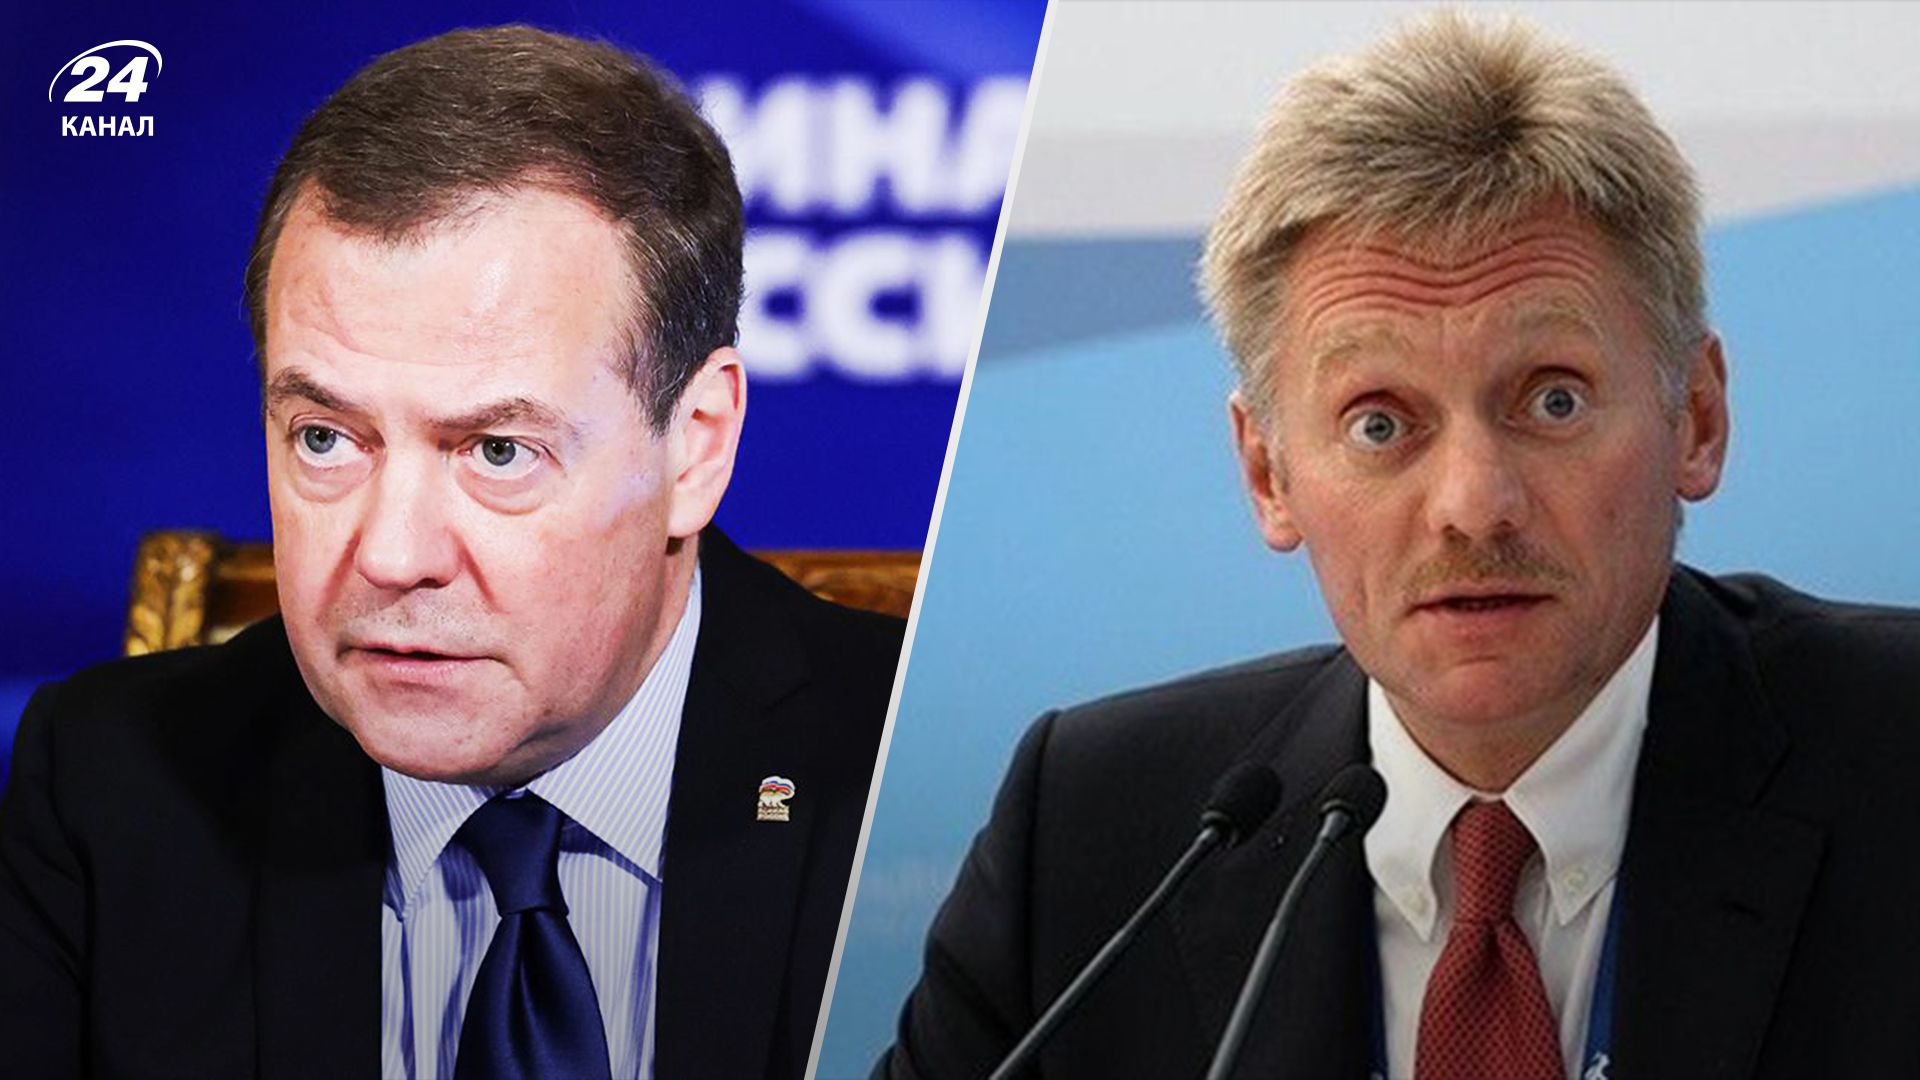 Снова пригрозил ядеркой: Медведева расколбасило от слов Шольца о том, что Россия должна проиграть - 24 Канал